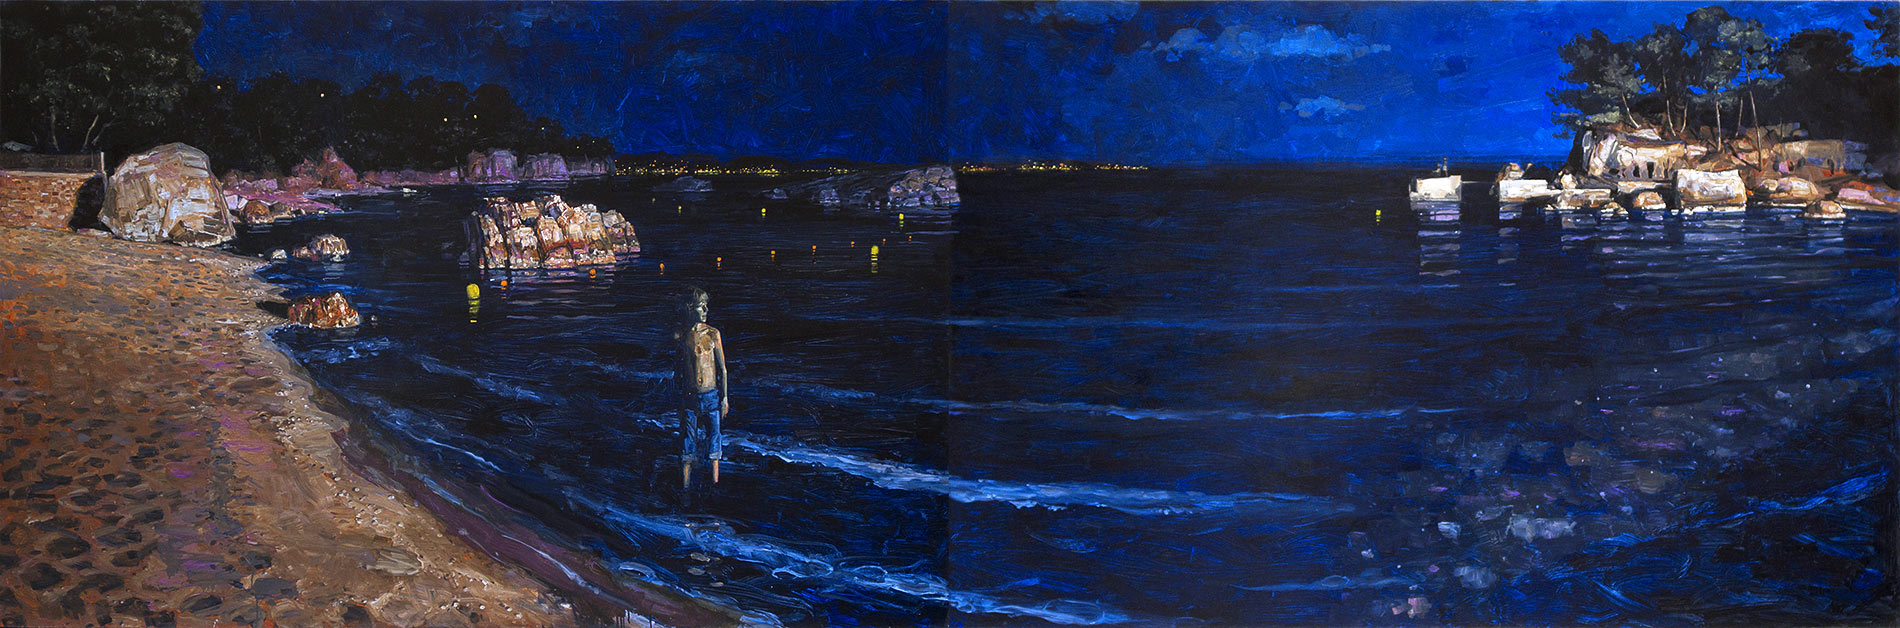 La plage (le bruit de la nuit). Diptyque, huile sur toile, 127 x 192 cm